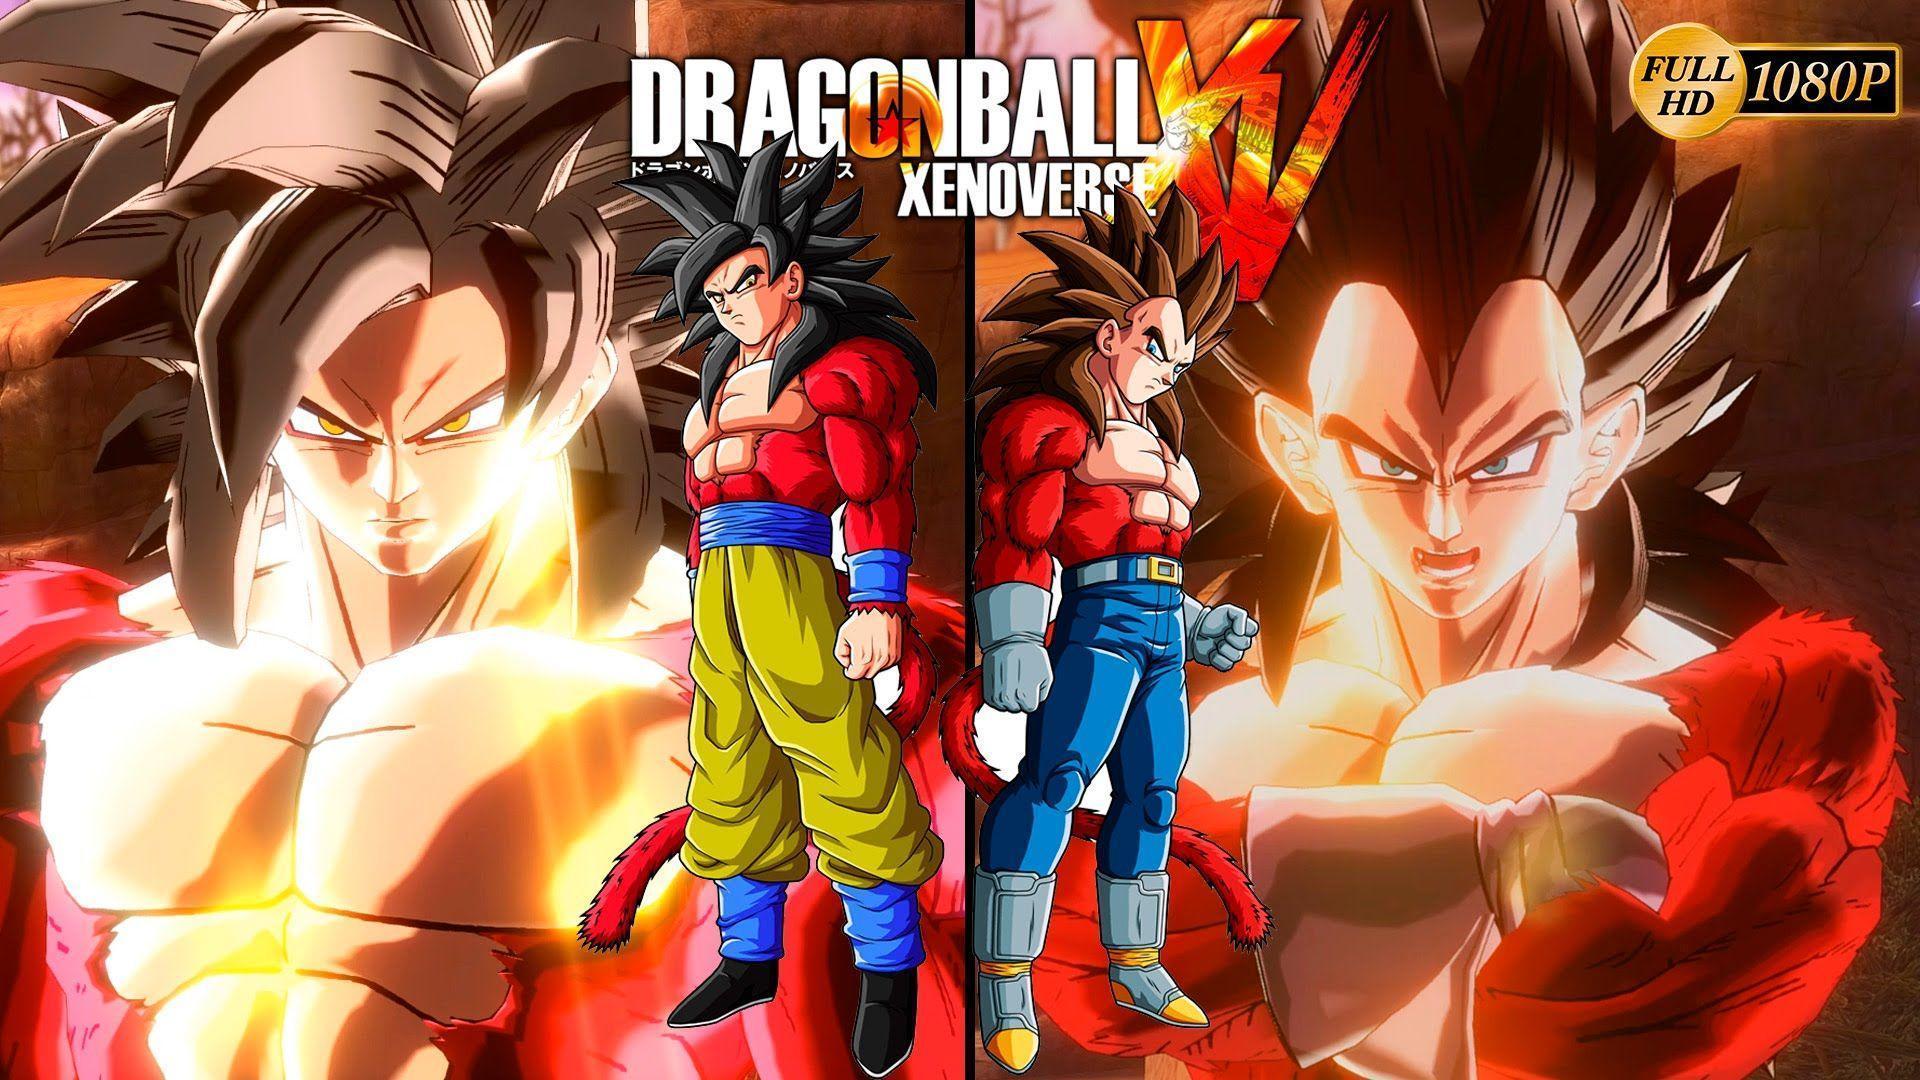 Dragon Ball Xenoverse Saiyan 4 Vegeta ssj4 vs Super Saiyan